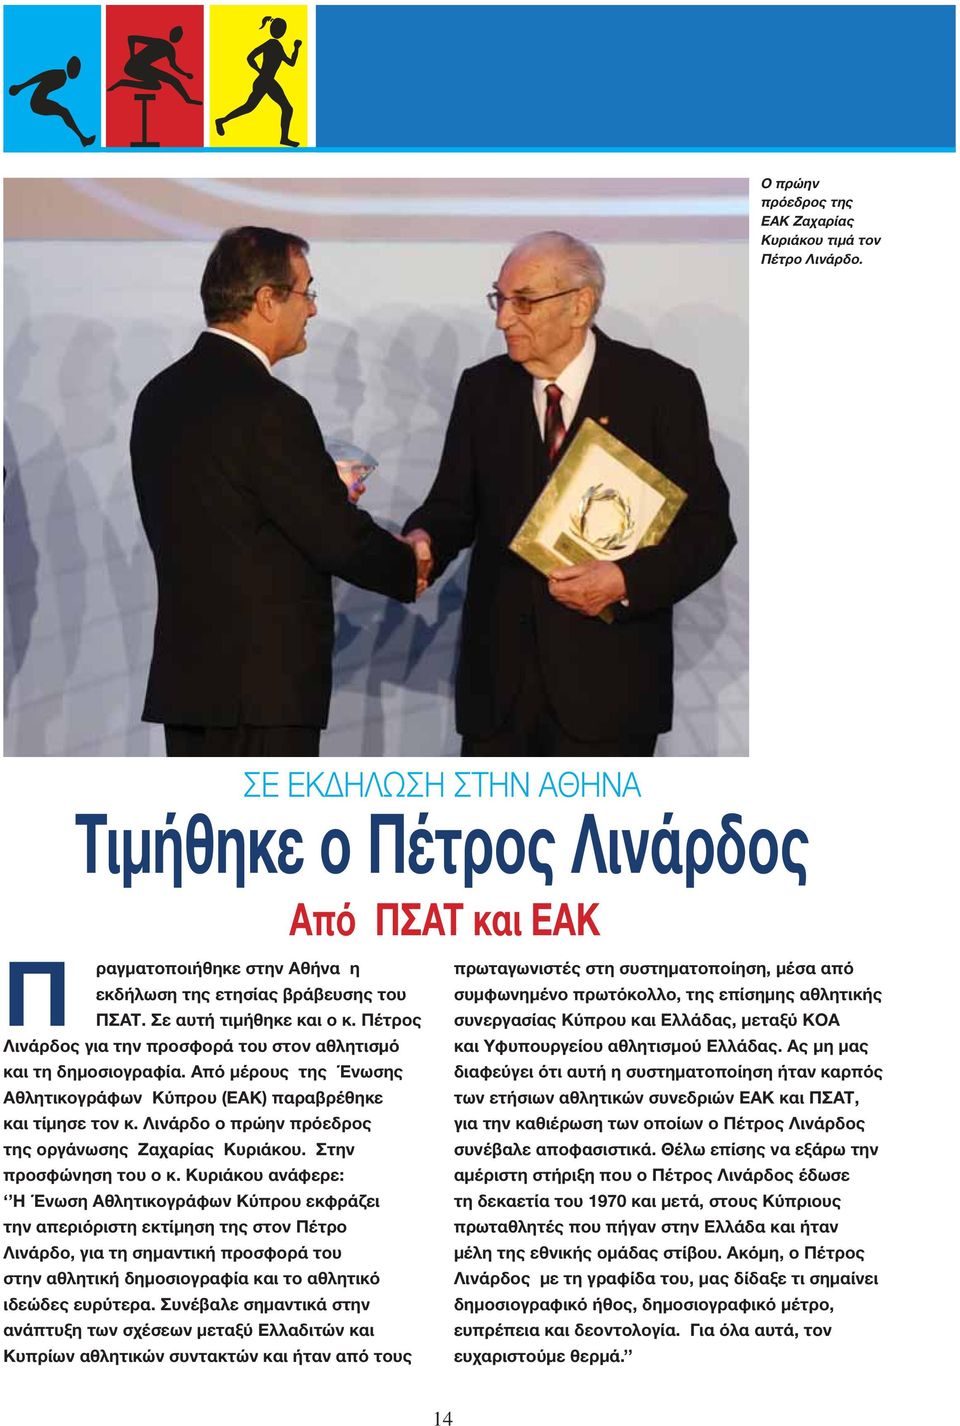 Πέτρος Λινάρδος για την προσφορά του στον αθλητισμό και τη δημοσιογραφία. Από μέρους της Ένωσης Αθλητικογράφων Κύπρου (ΕΑΚ) παραβρέθηκε και τίμησε τον κ.